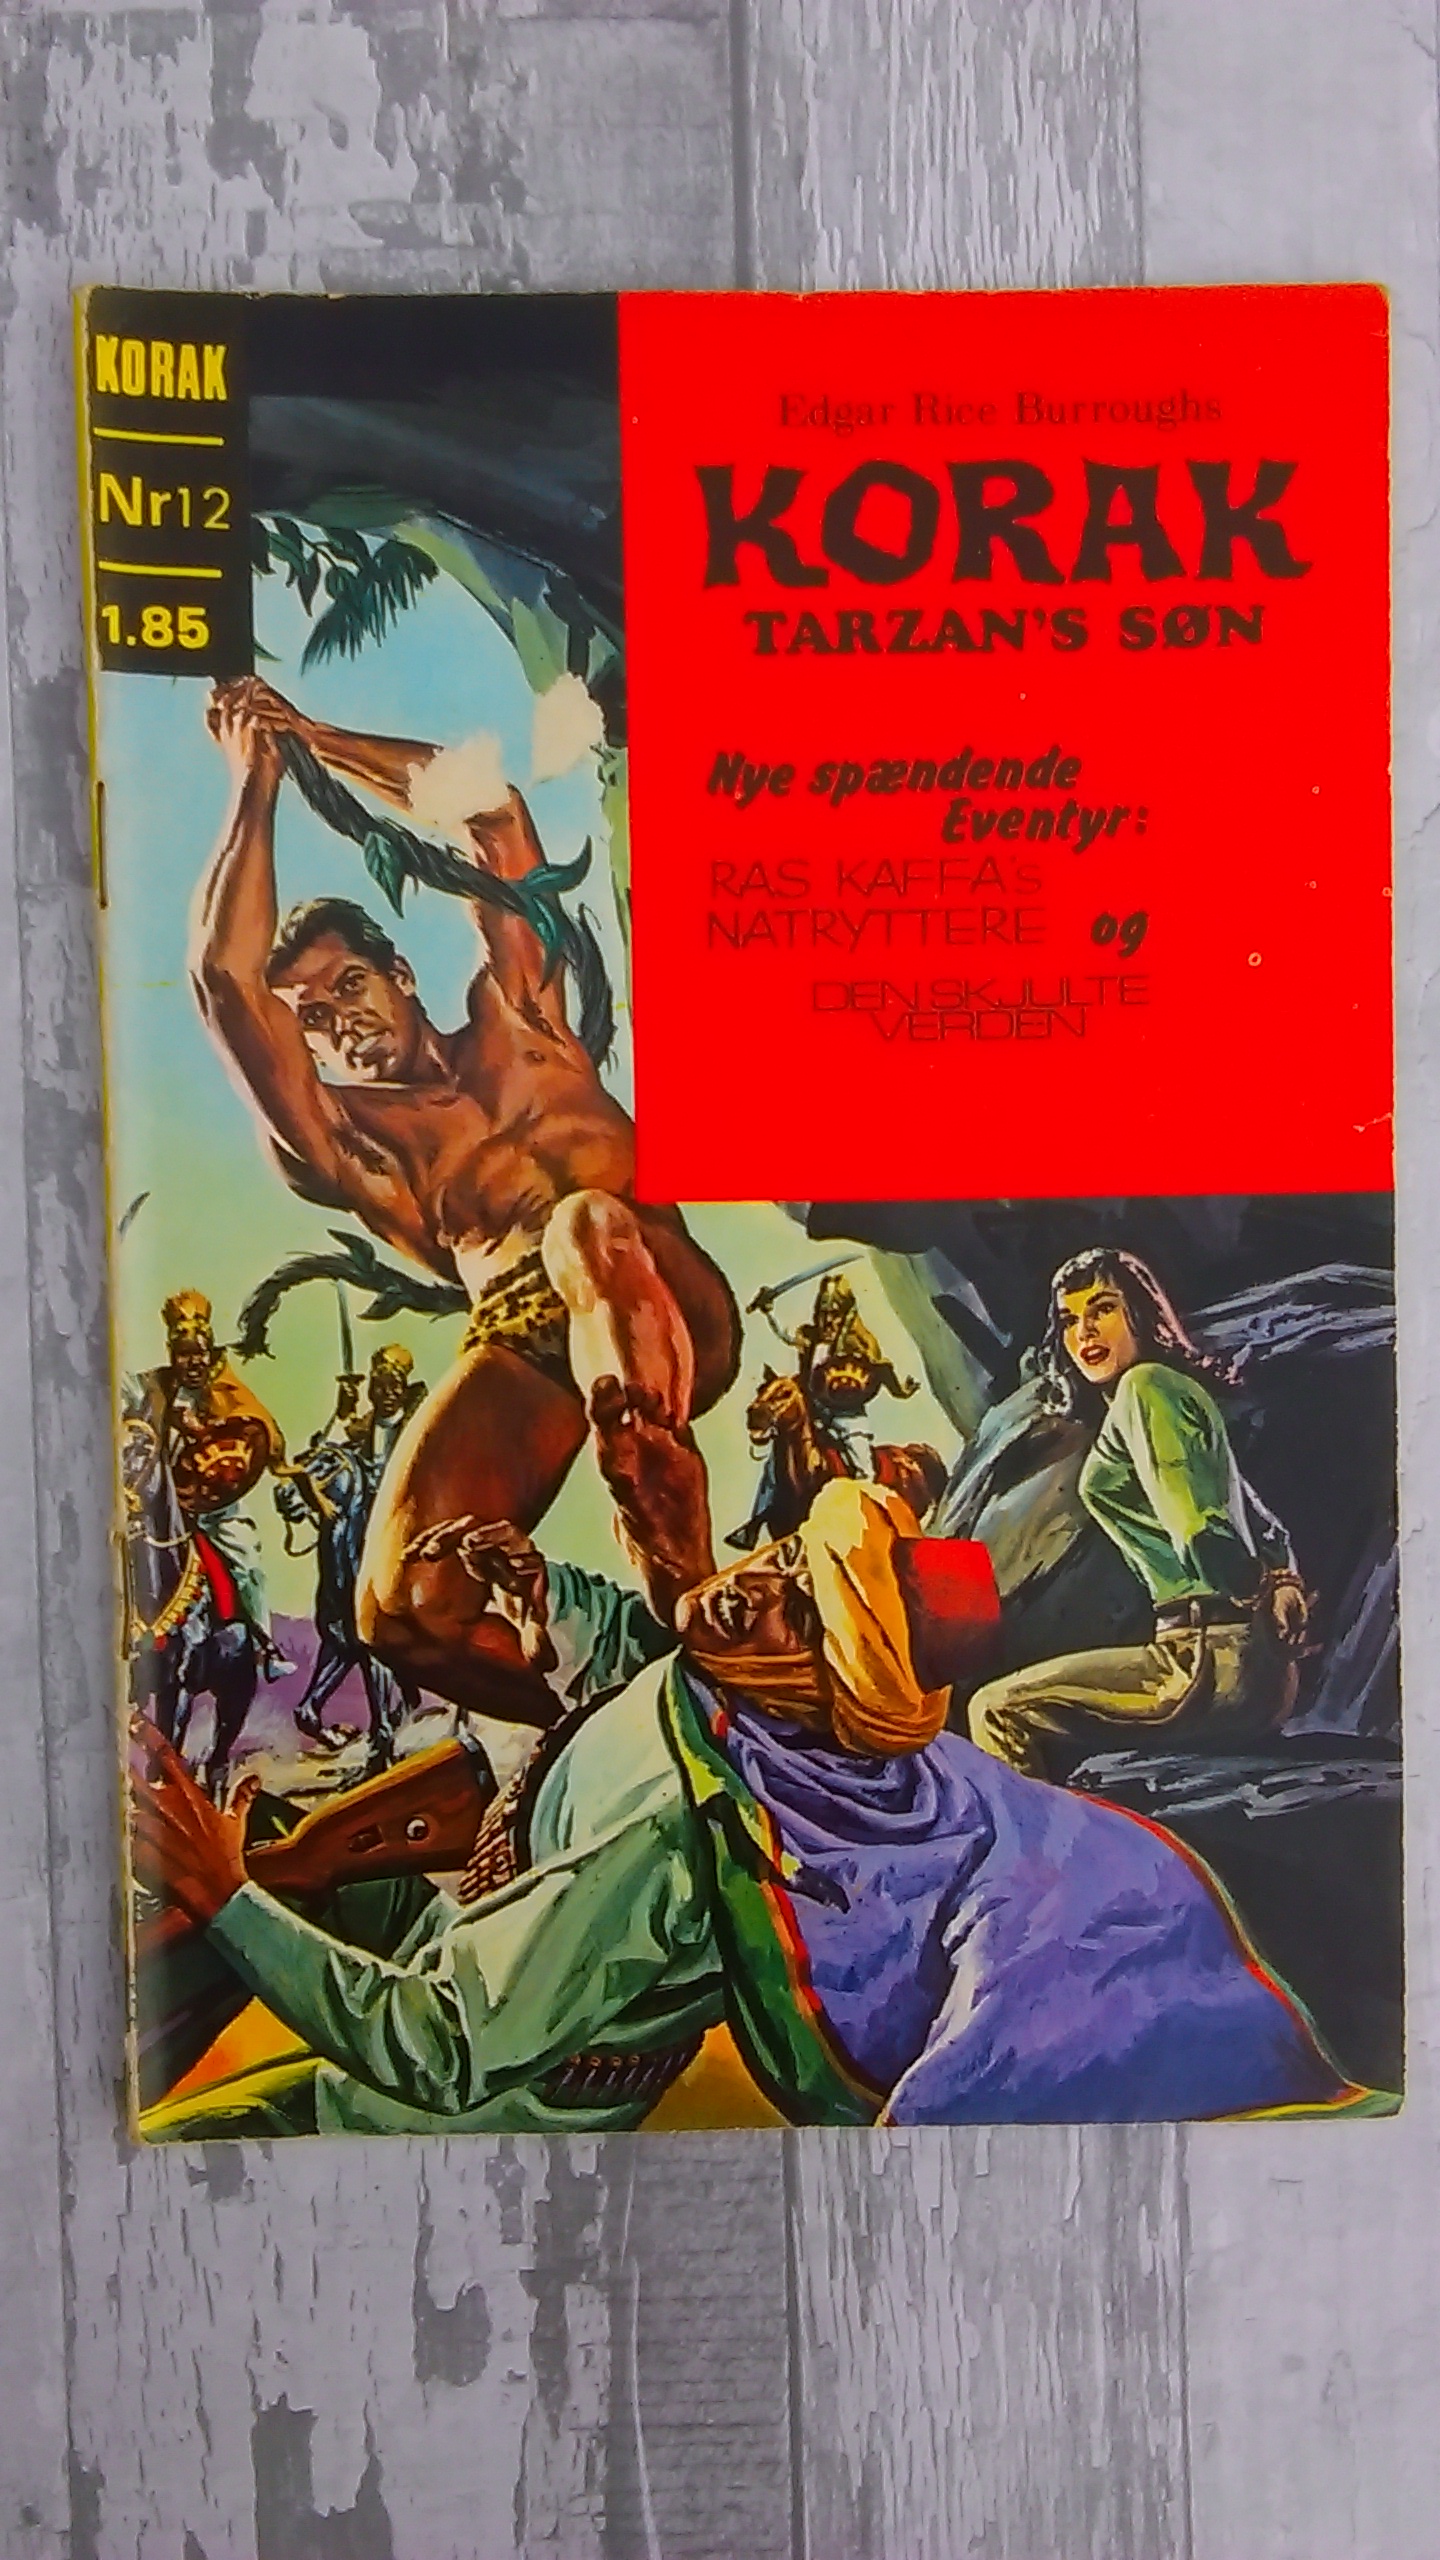 Korak, Tarzans Sn 196...